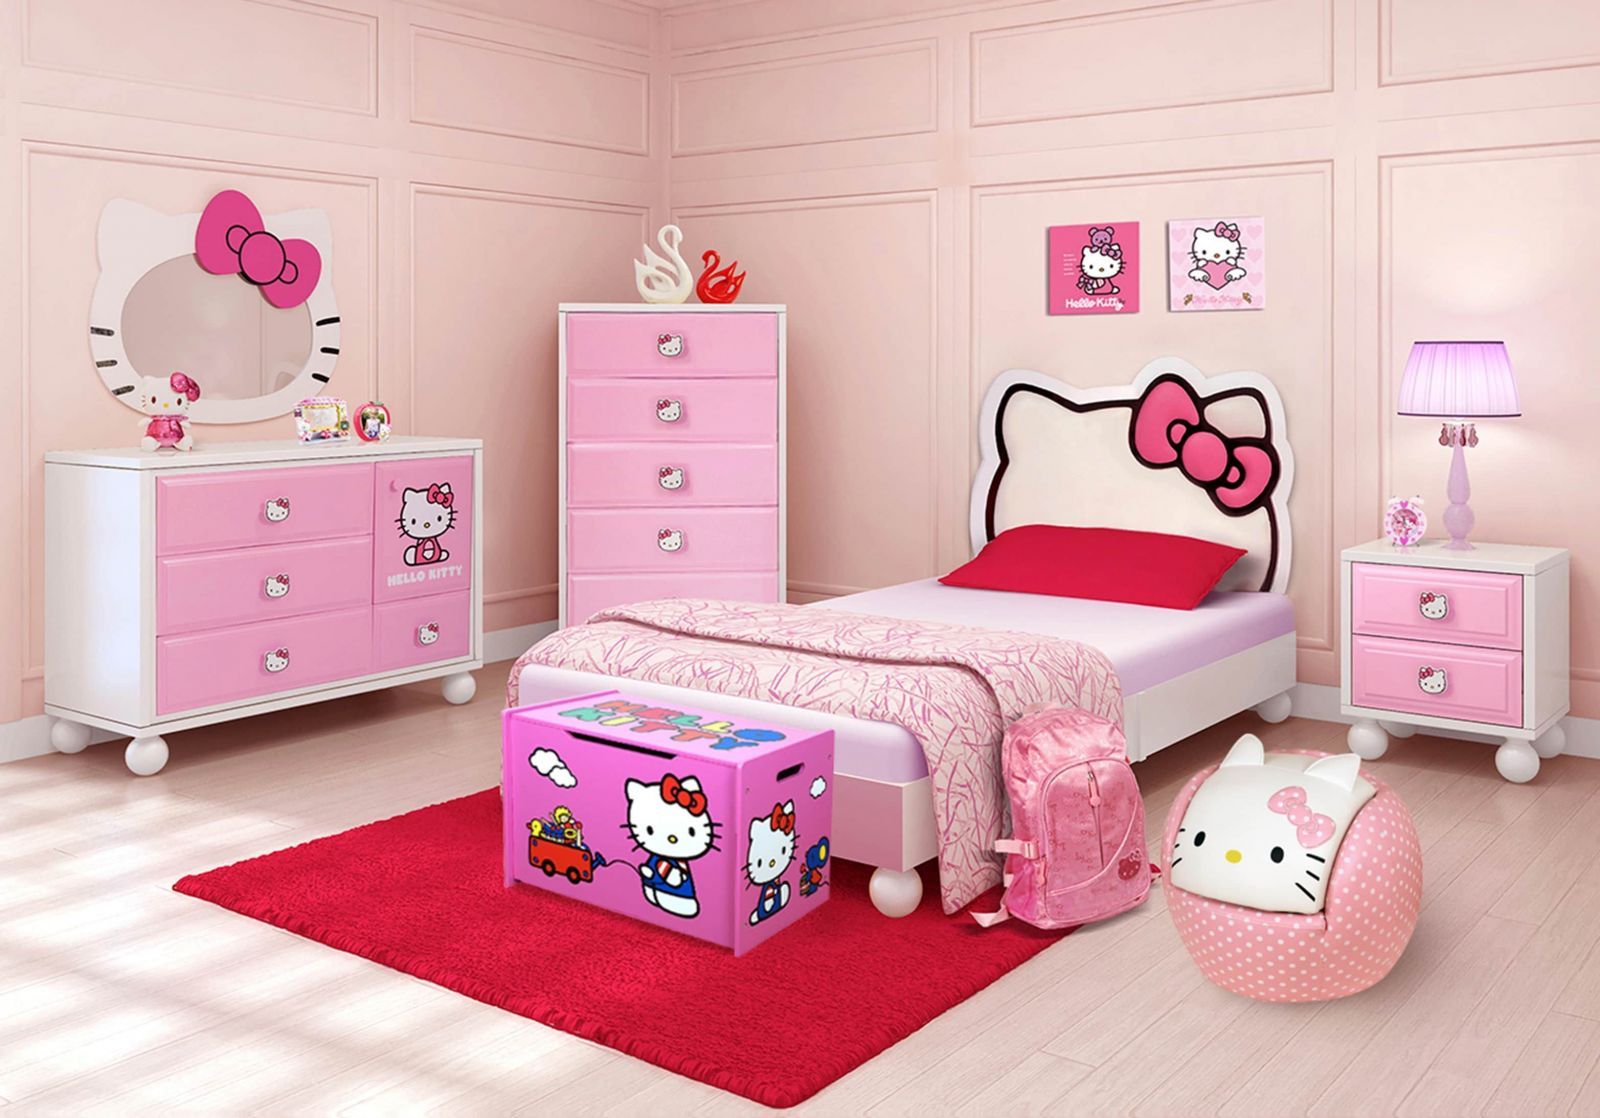 Phòng ngủ với tất cả các đồ dùng trang trí đều có hình Hello Kitty